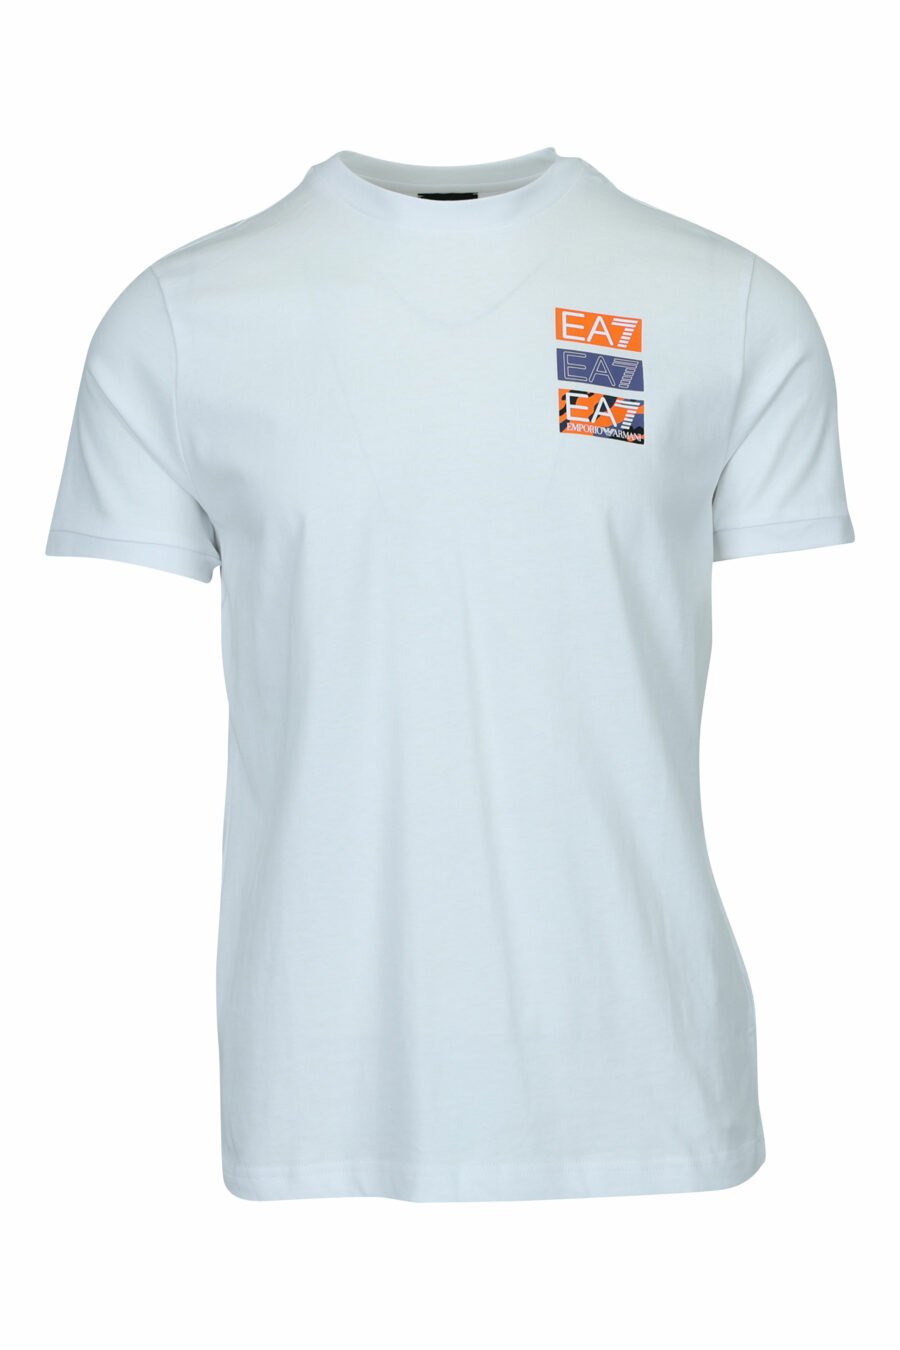 Camiseta blanca con minilogo "lux identity" camuflado y estampado detrás - 8057970669838